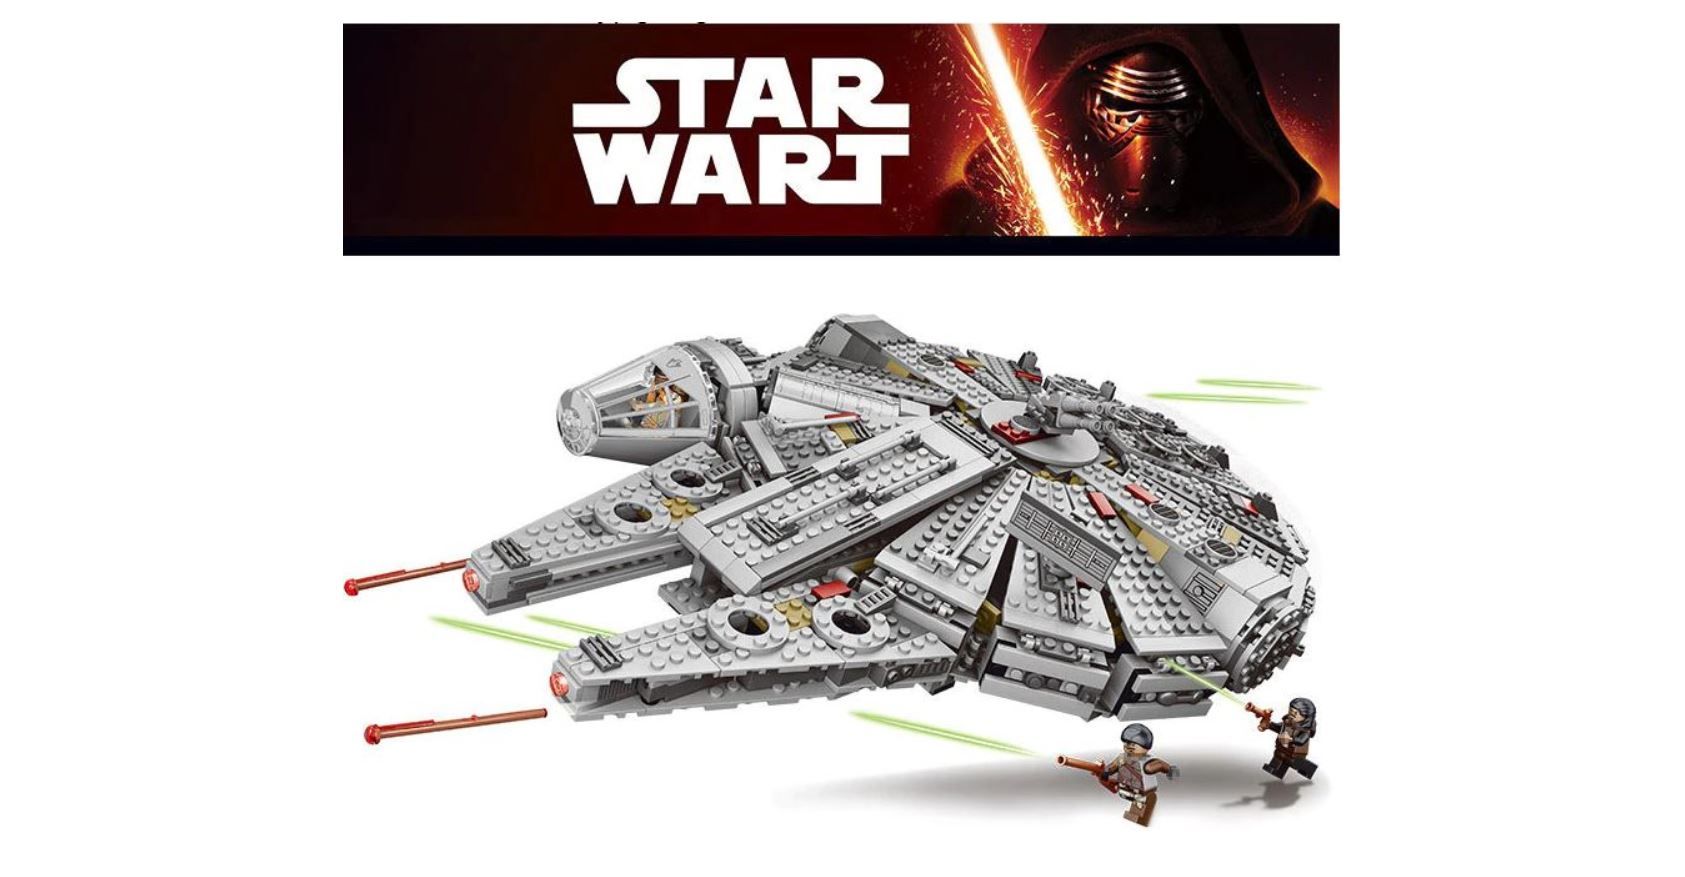 ¡Chollazo! Halcón Milenario de Star Wars tipo LEGO por sólo 36,91€ desde España